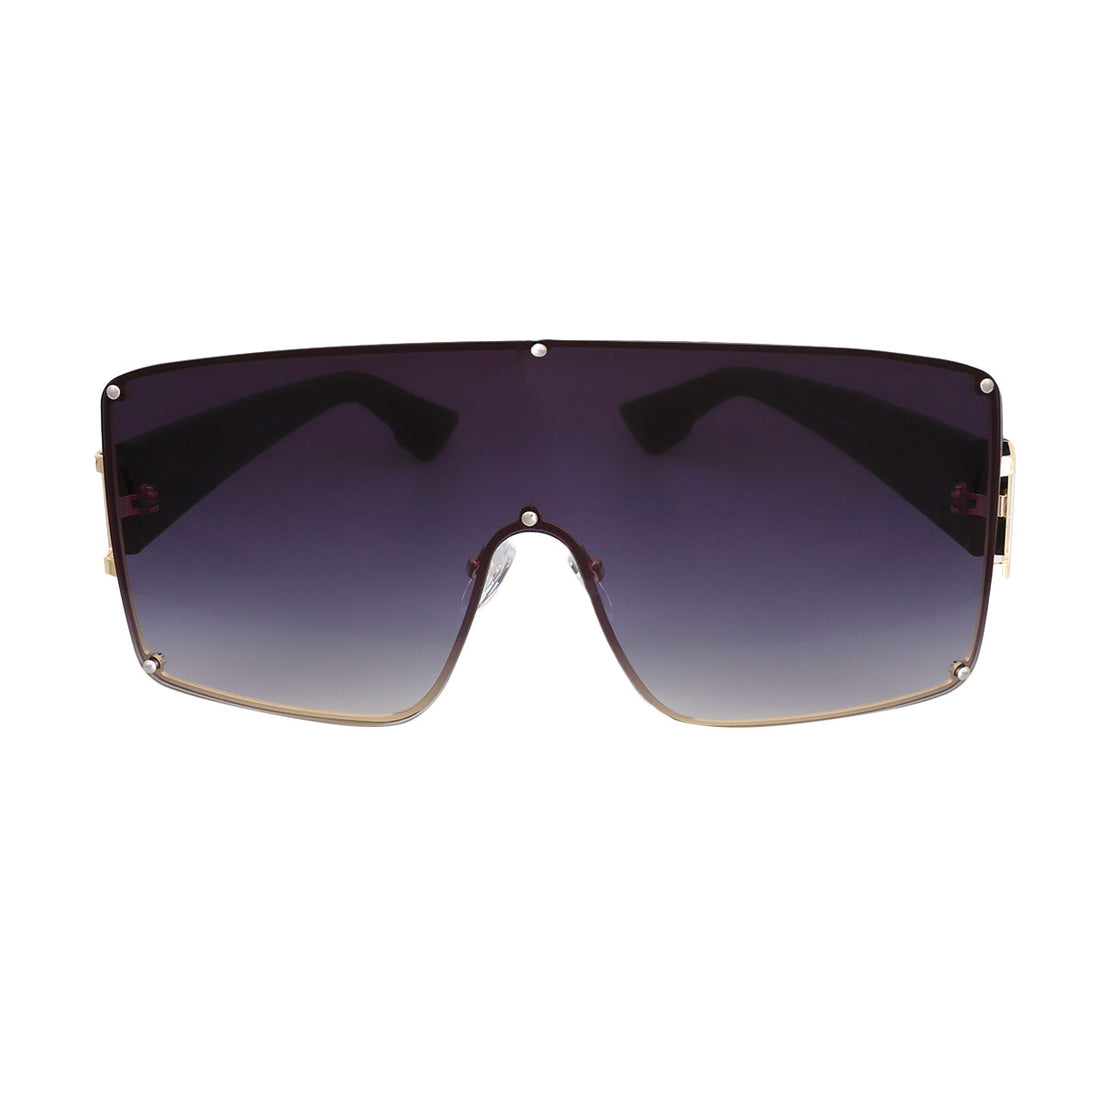 Black Gradient Square Visor Sunglasses